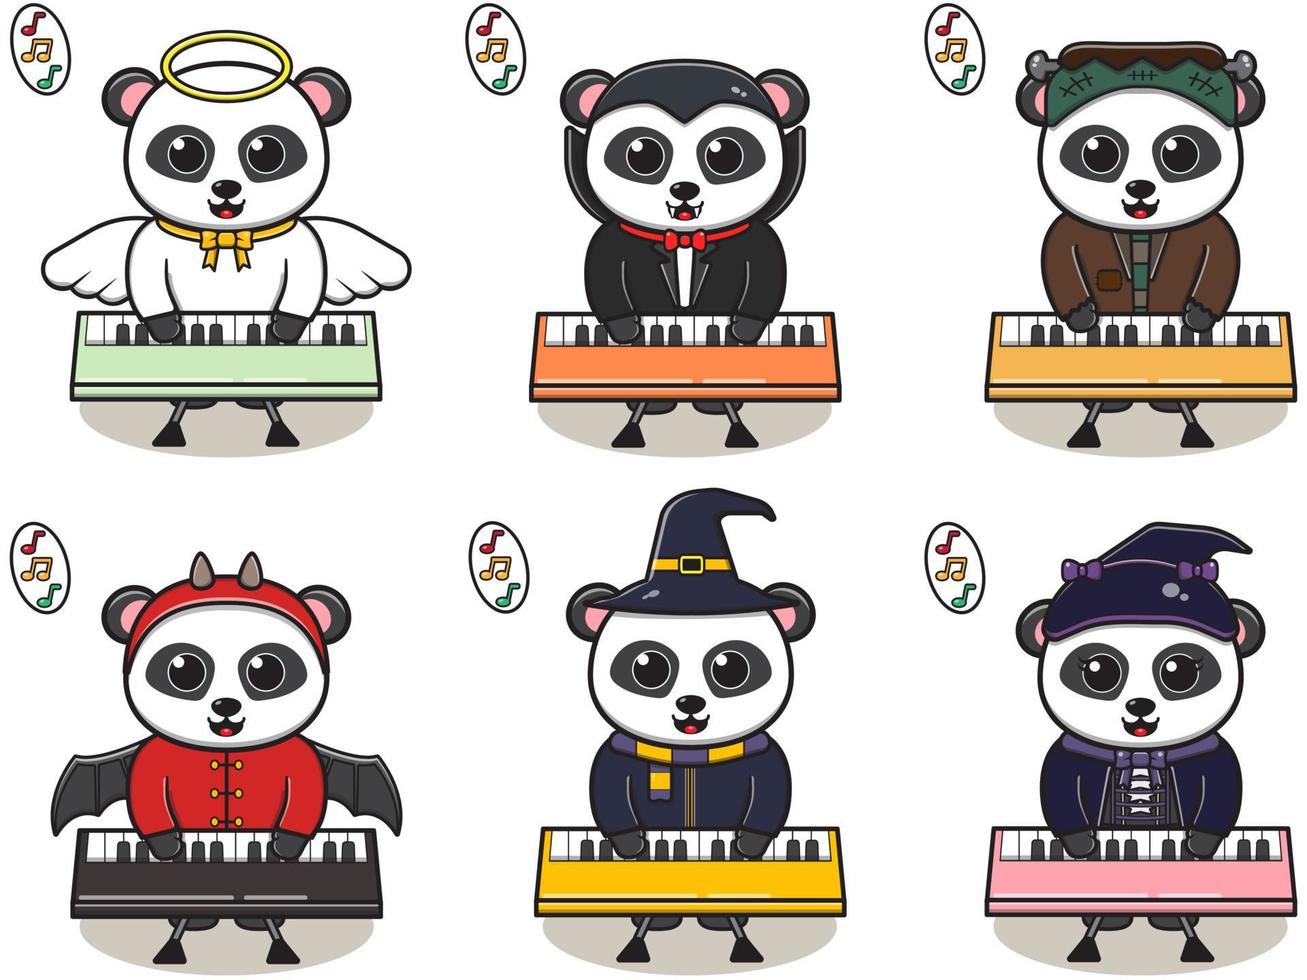 vectorillustratie van schattige panda met halloween-kostuum die keyboard speelt vector